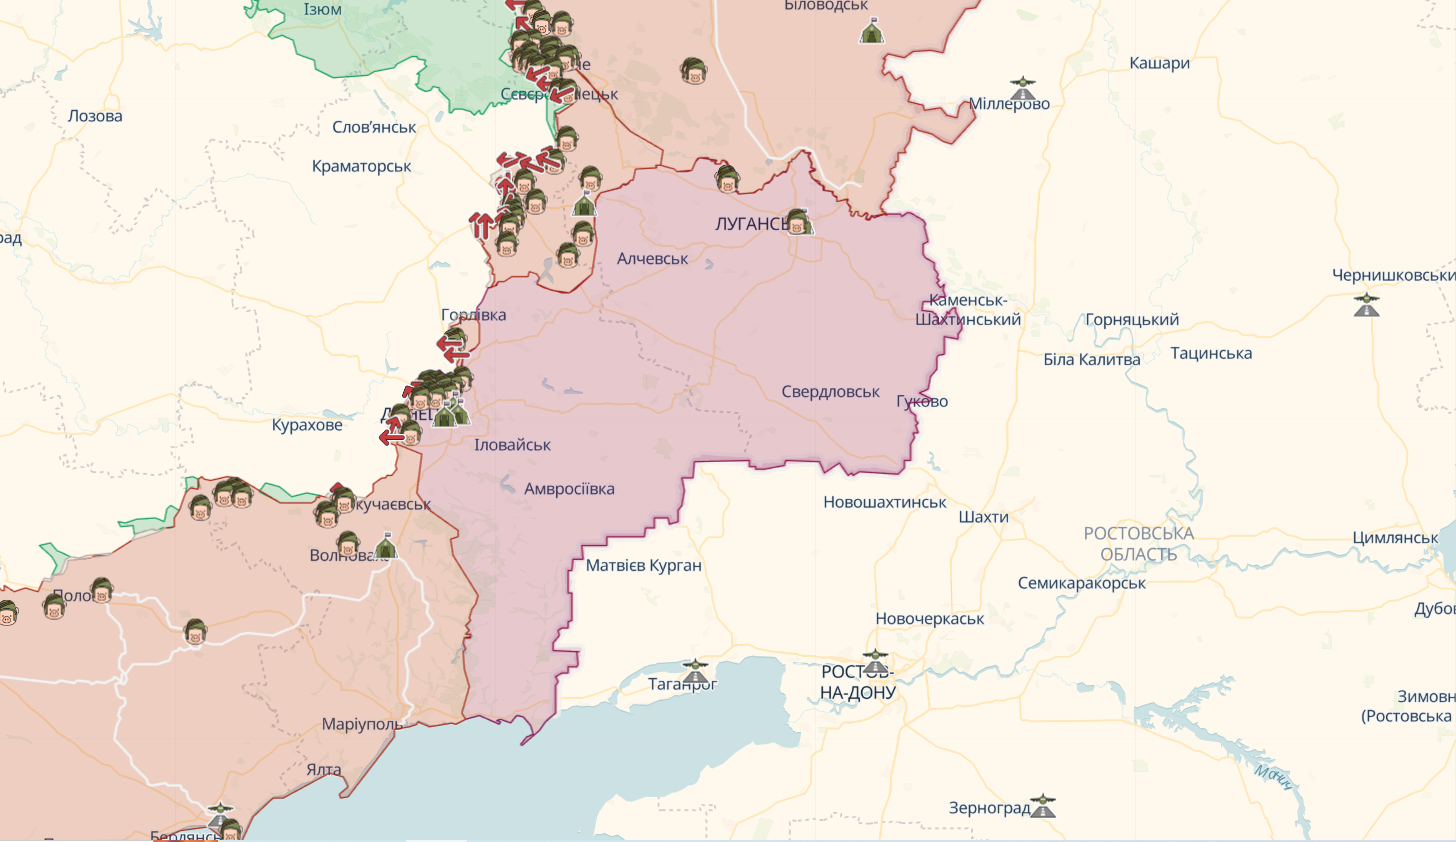 Войска РФ начали наступление на Луганщине, — Гайдай